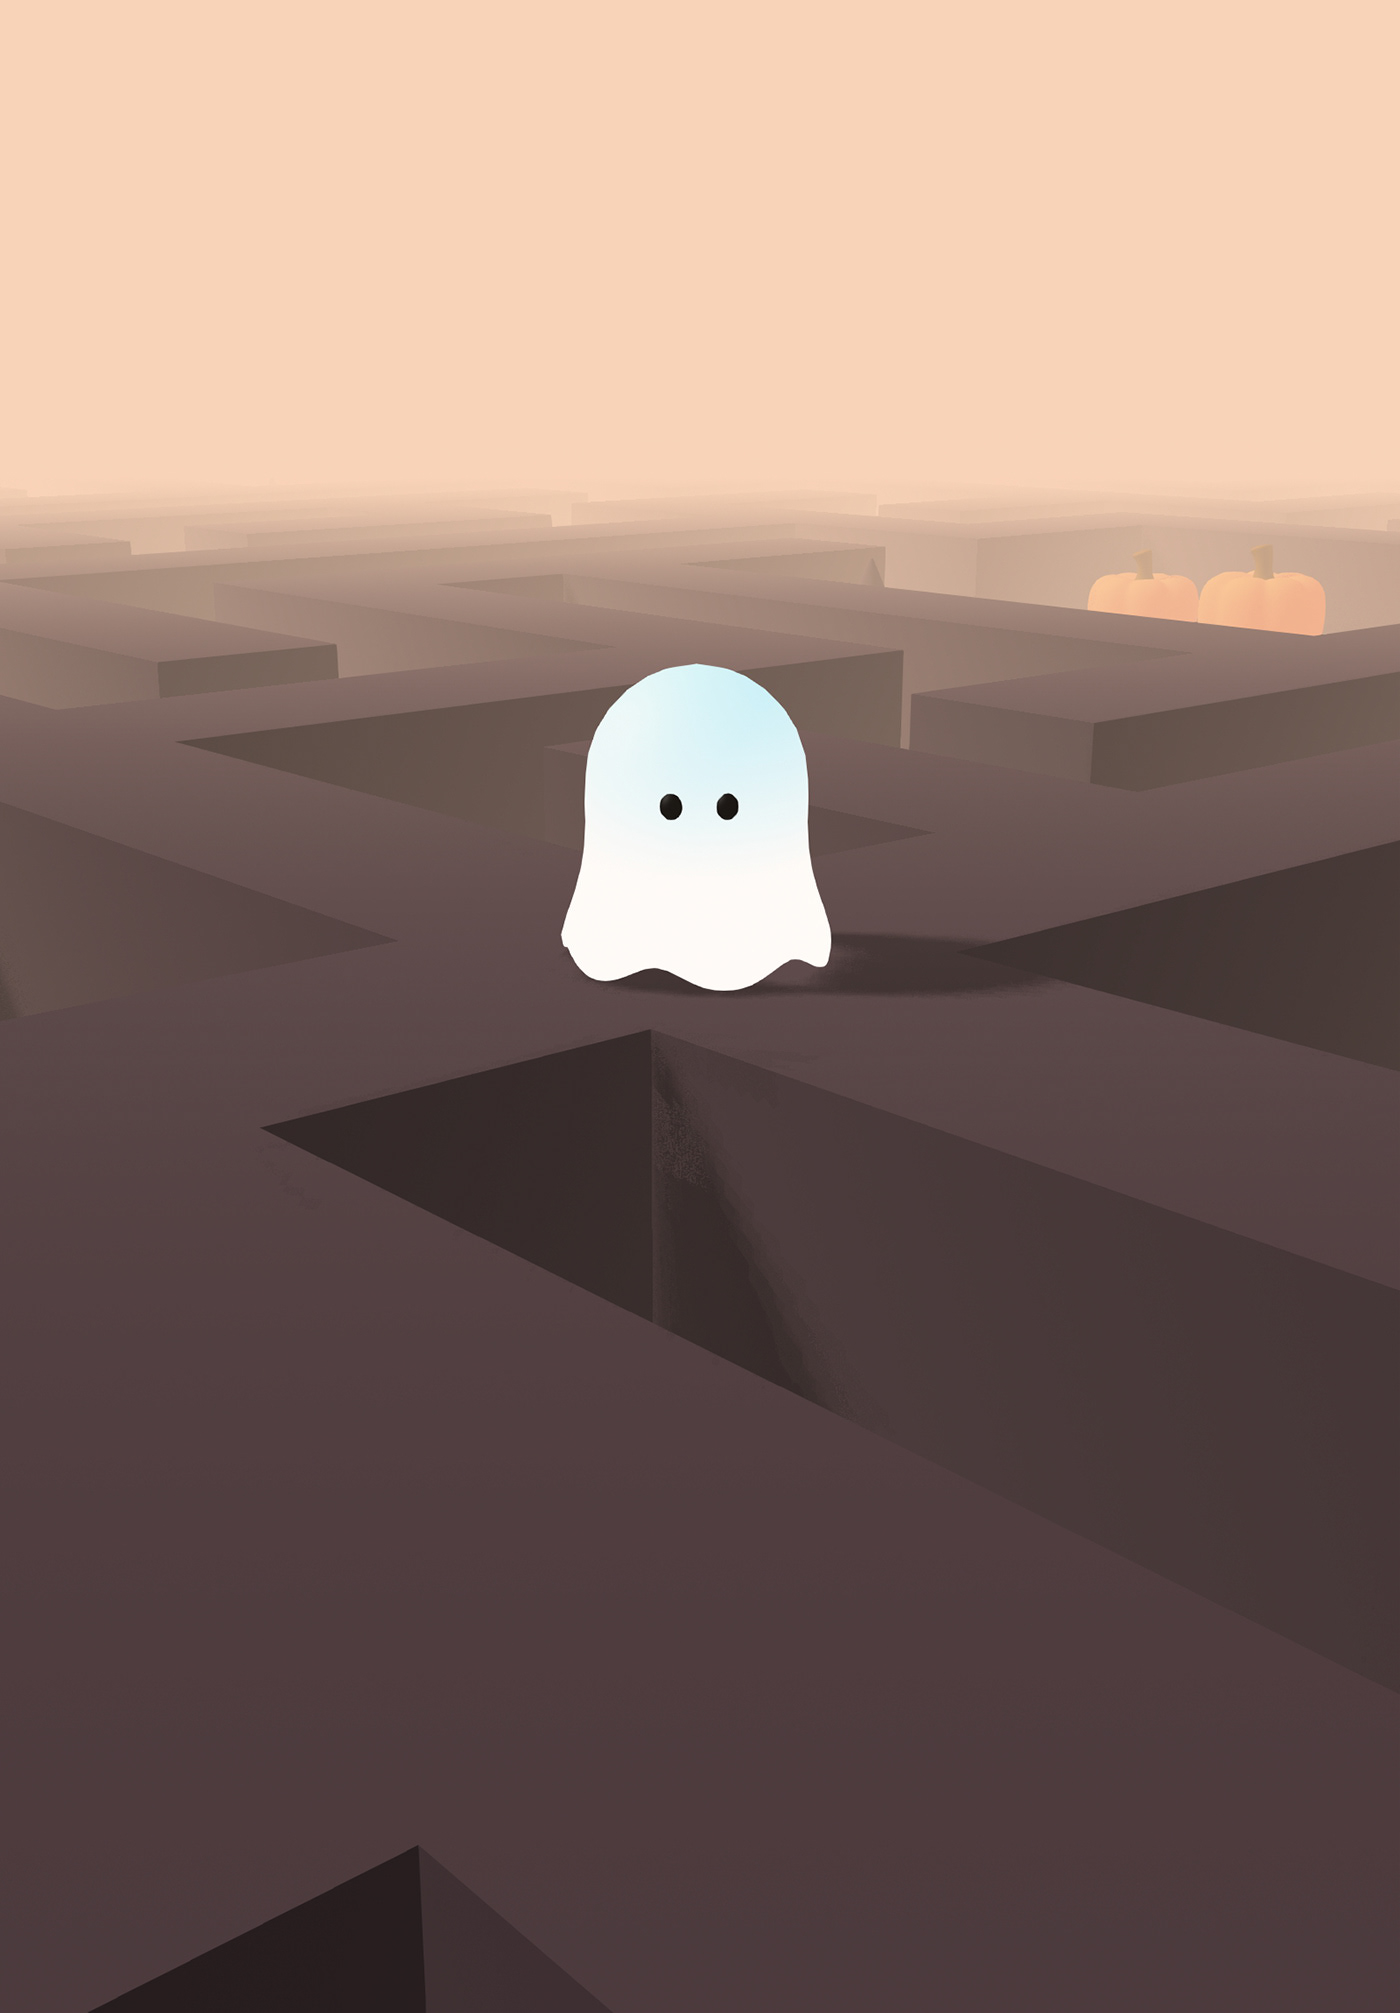 blender3d game ghost Halloween prototype pumpkin spline